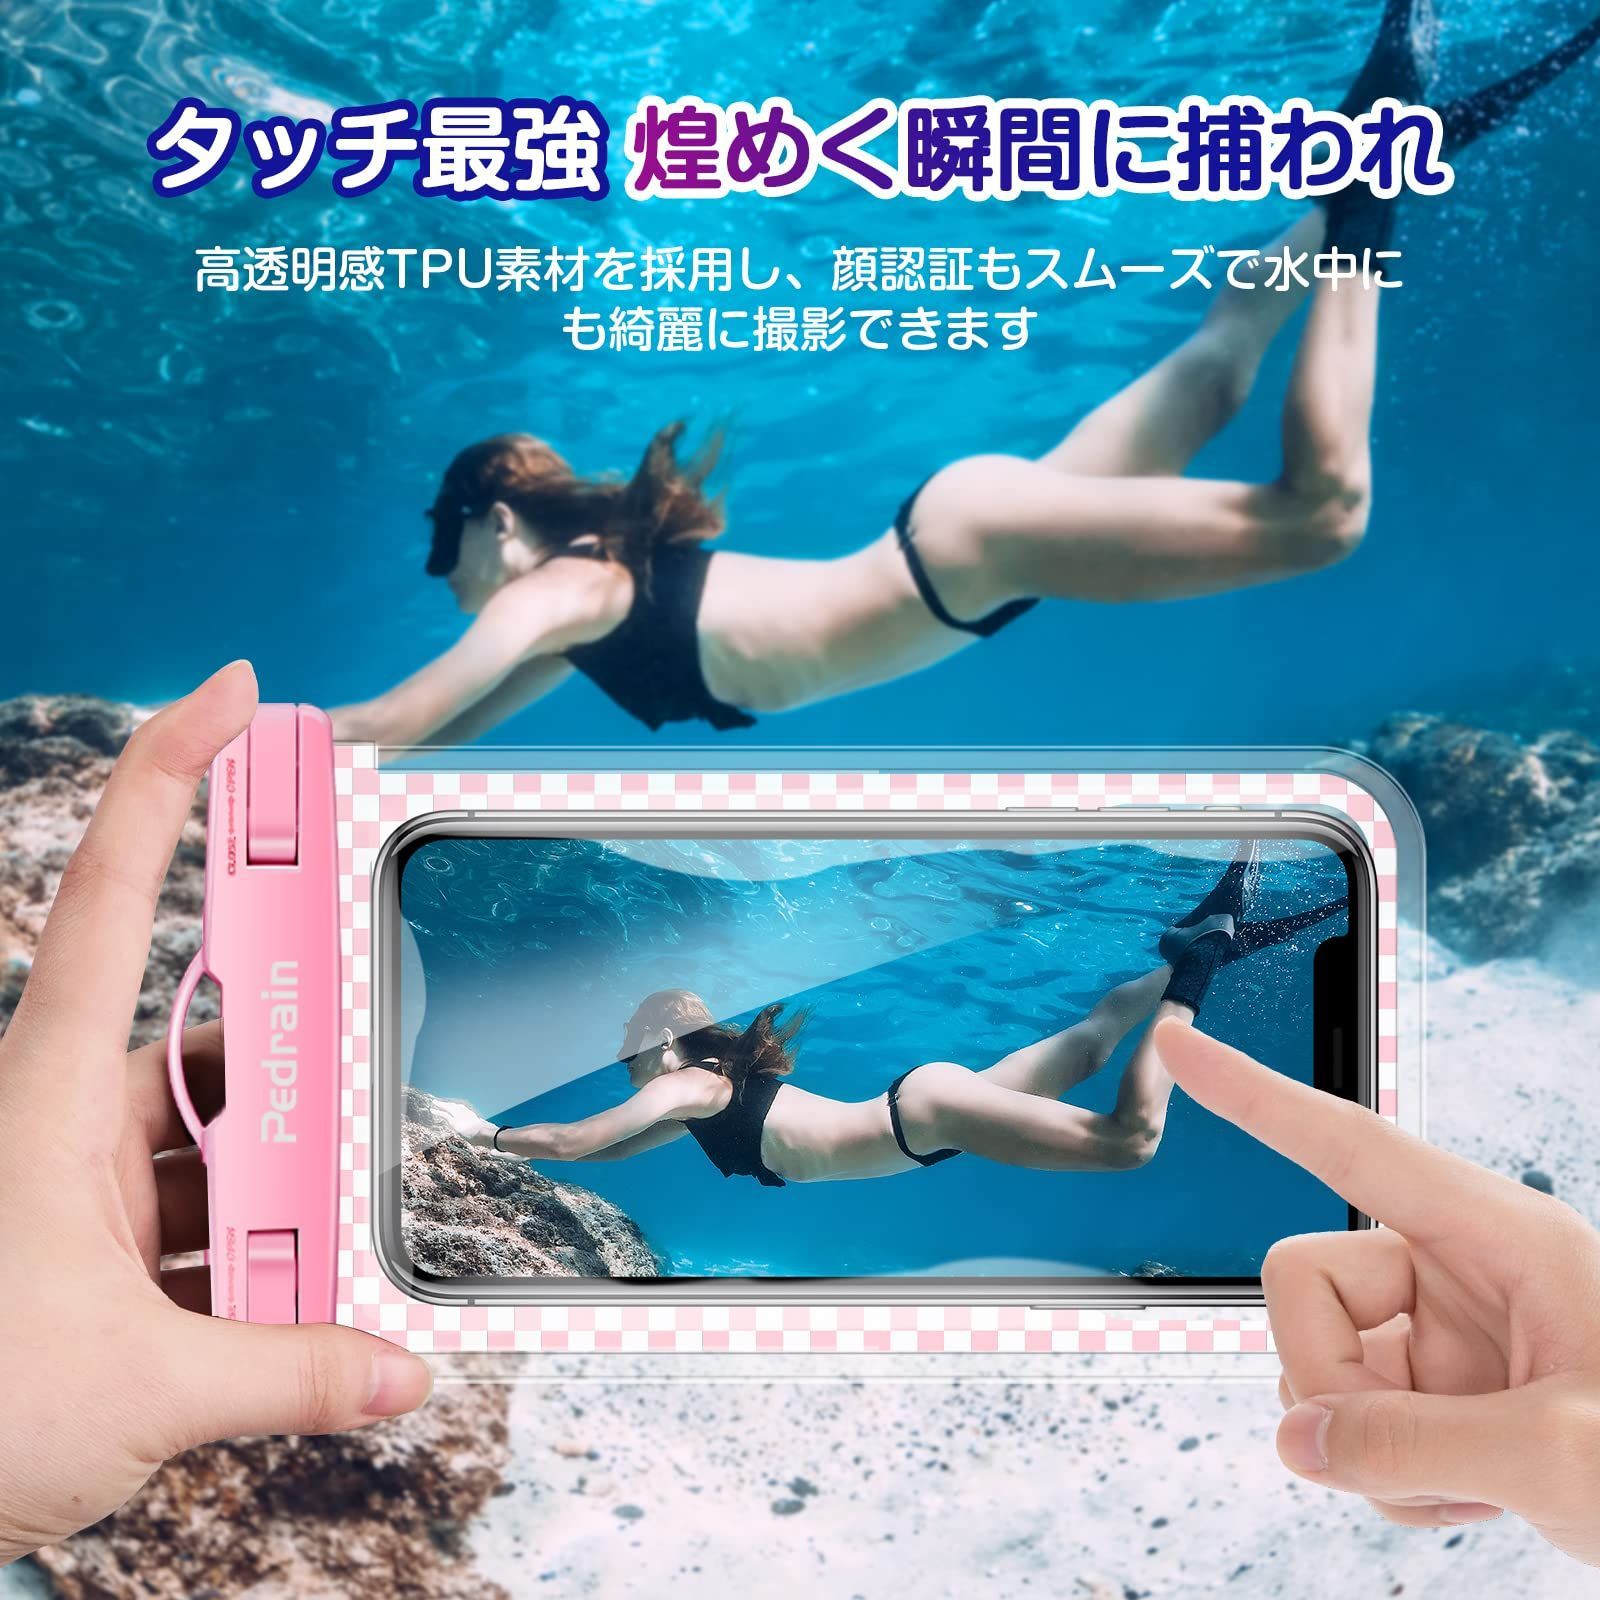 一部予約 防水ケース iPhone スマホ 海 プール 水中撮影 防水ポーチ ピンク